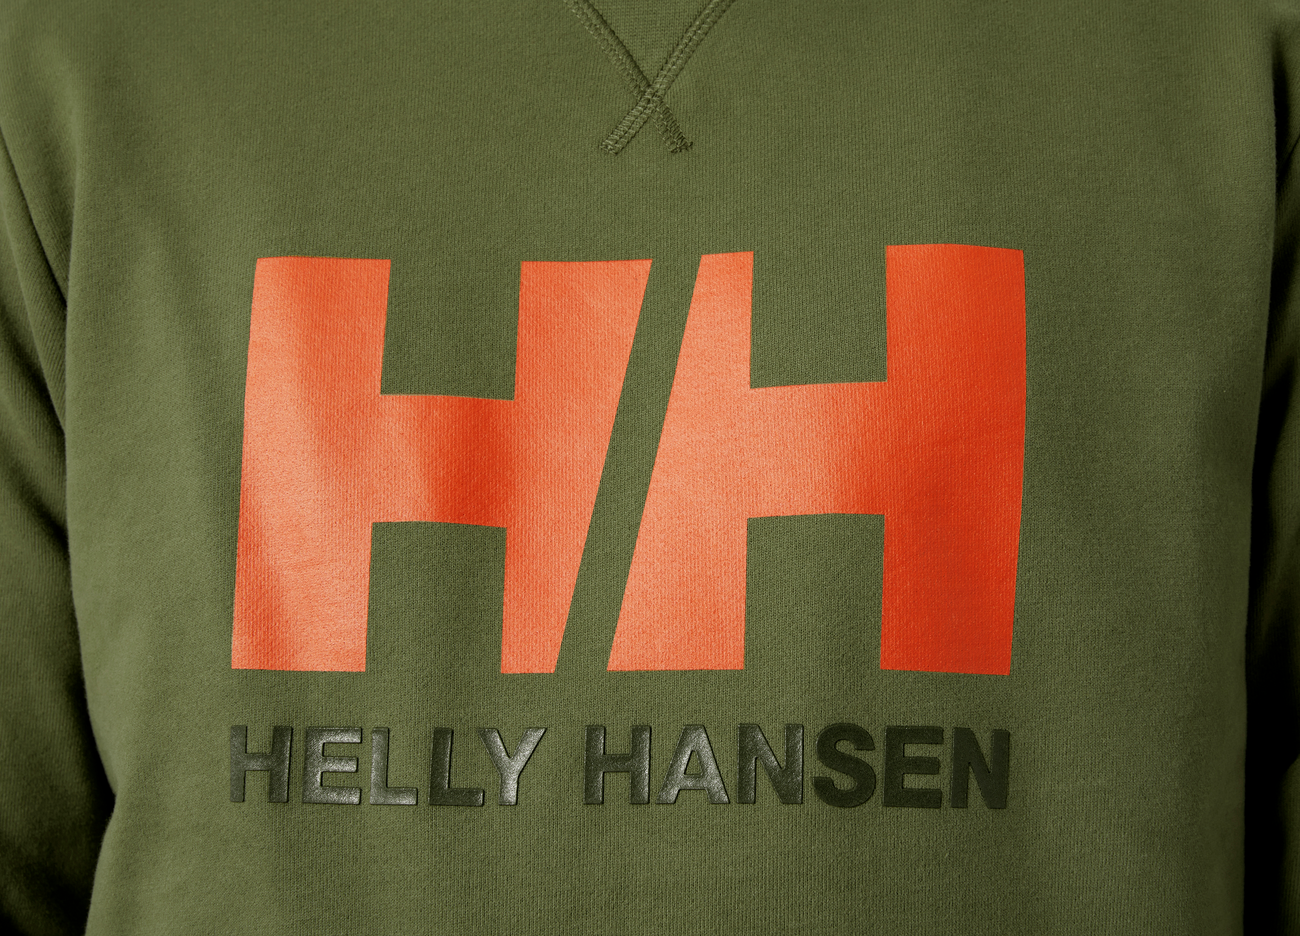 Helly Hansen HH Logo Crew Sweatshirt